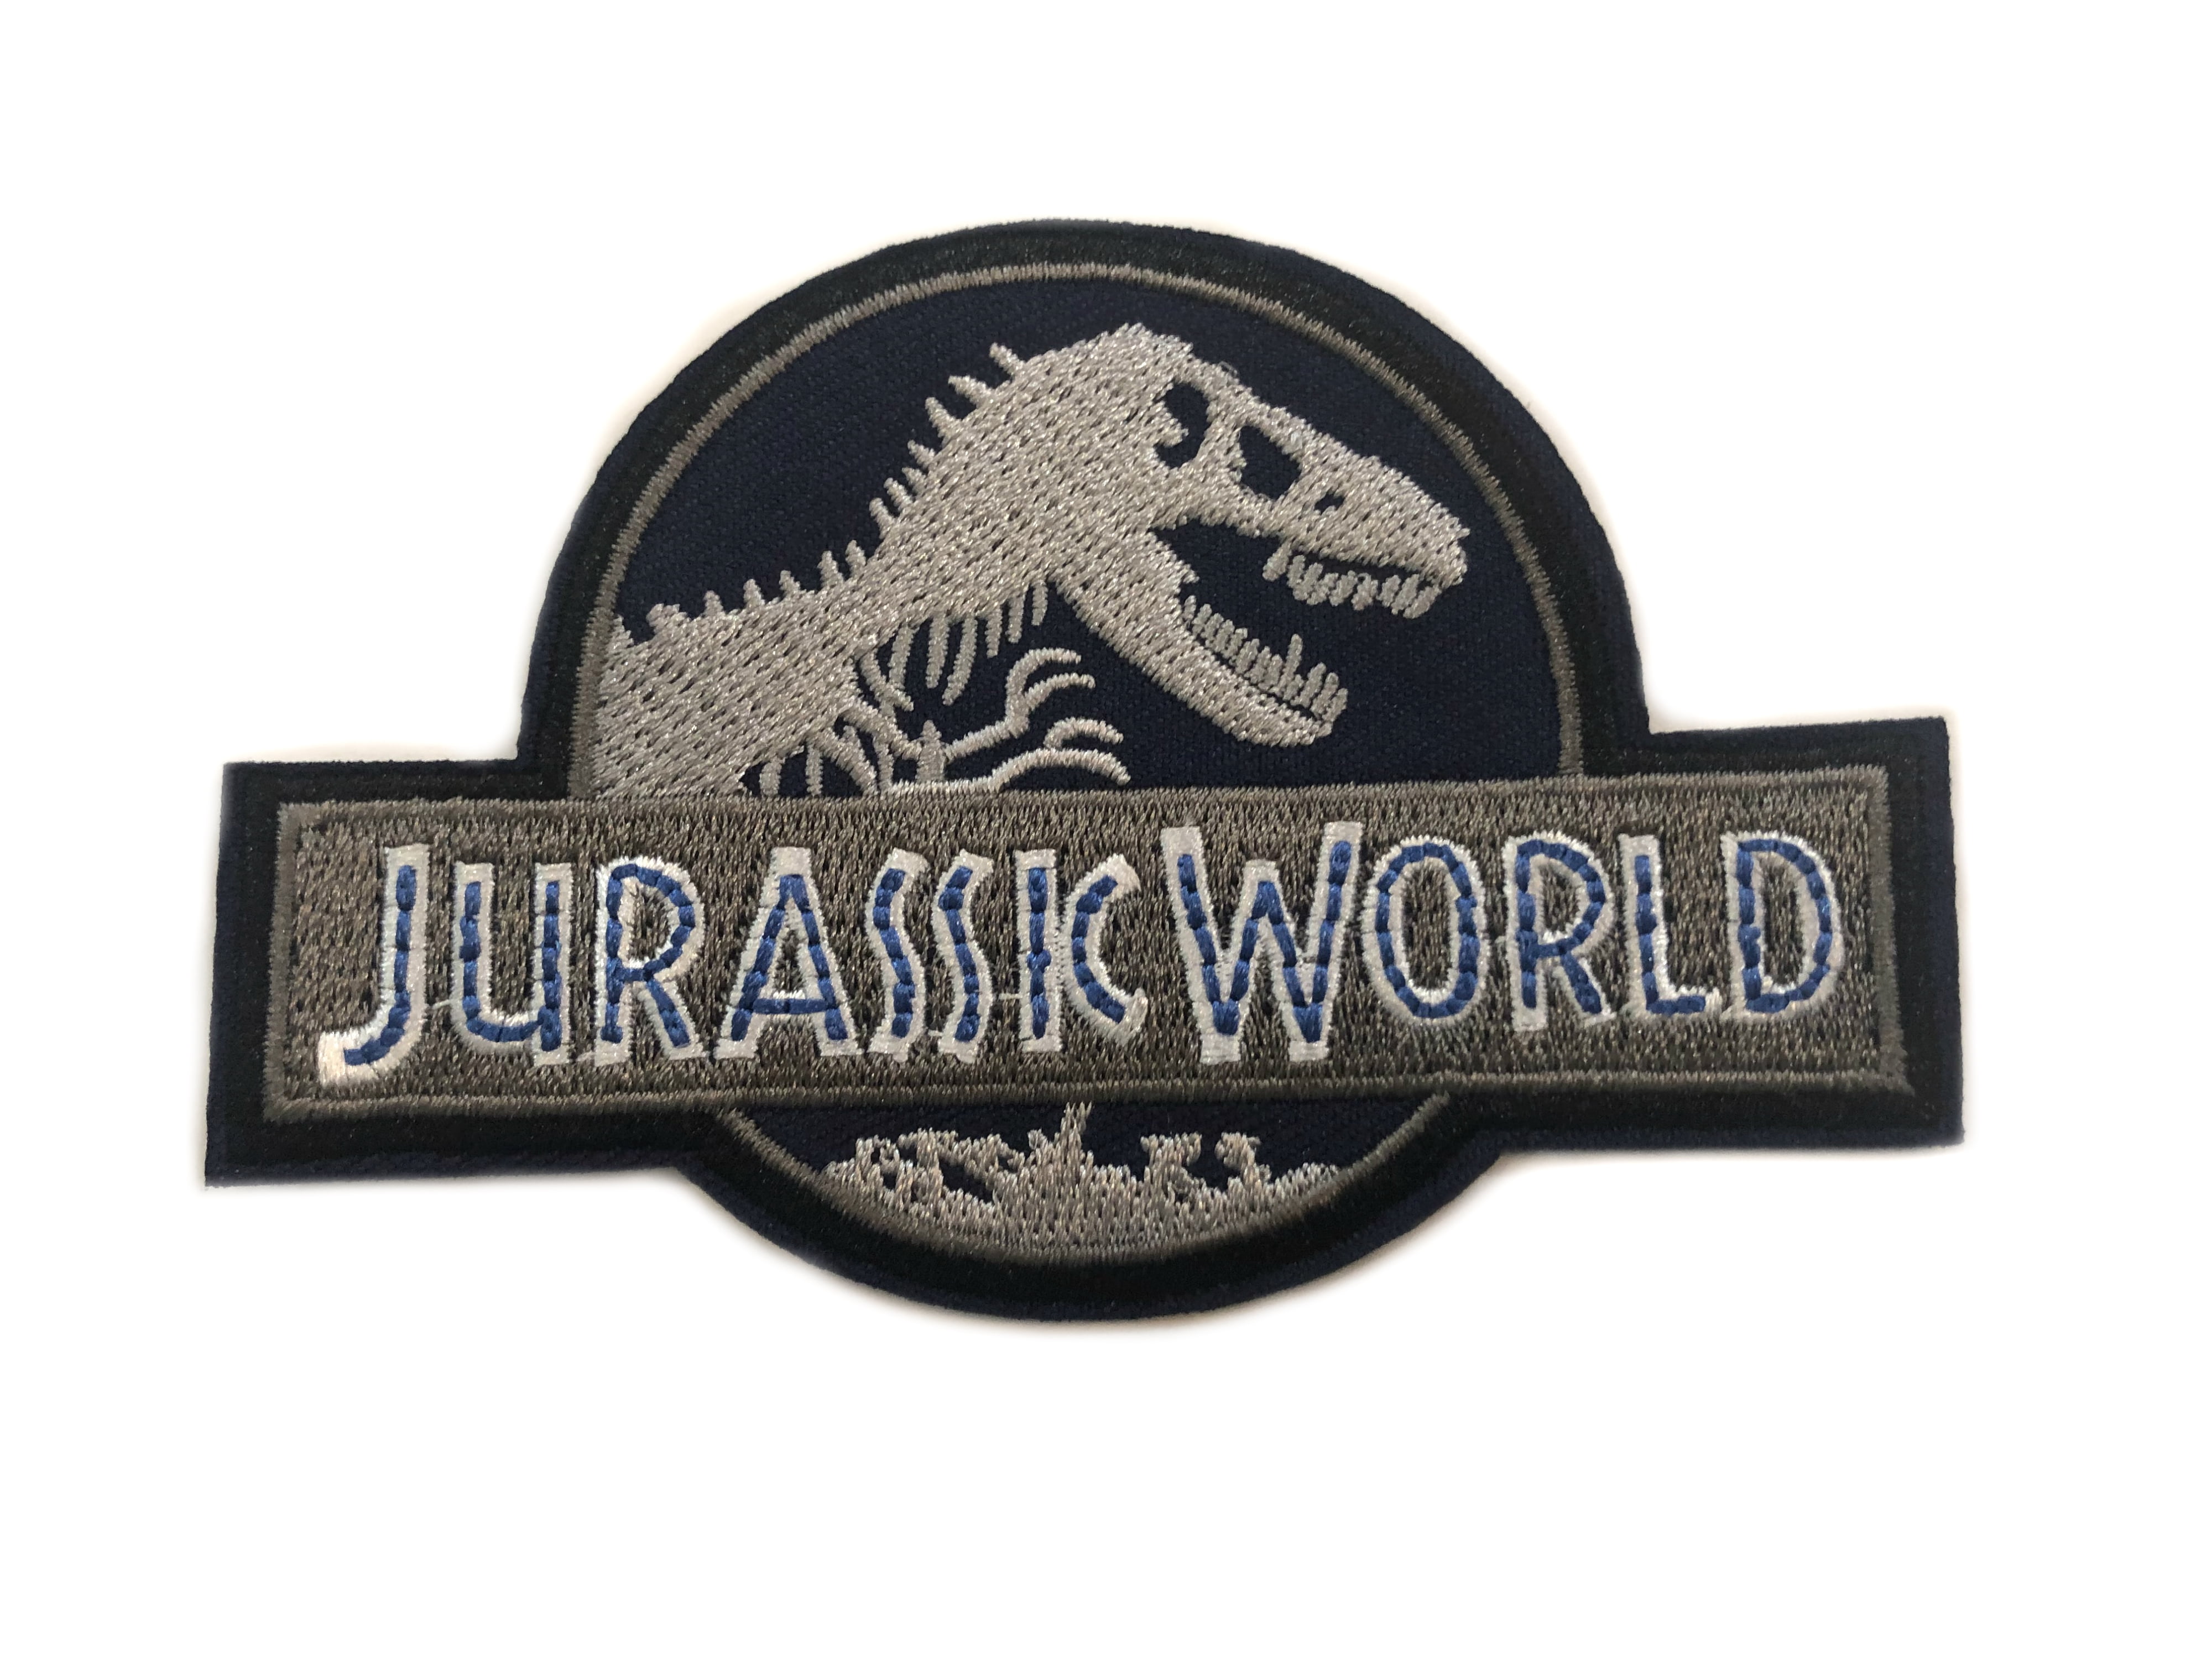 Tea Rex Jurassic Park Inspired Funny Unisex Men's Comedy Black T-Shirt